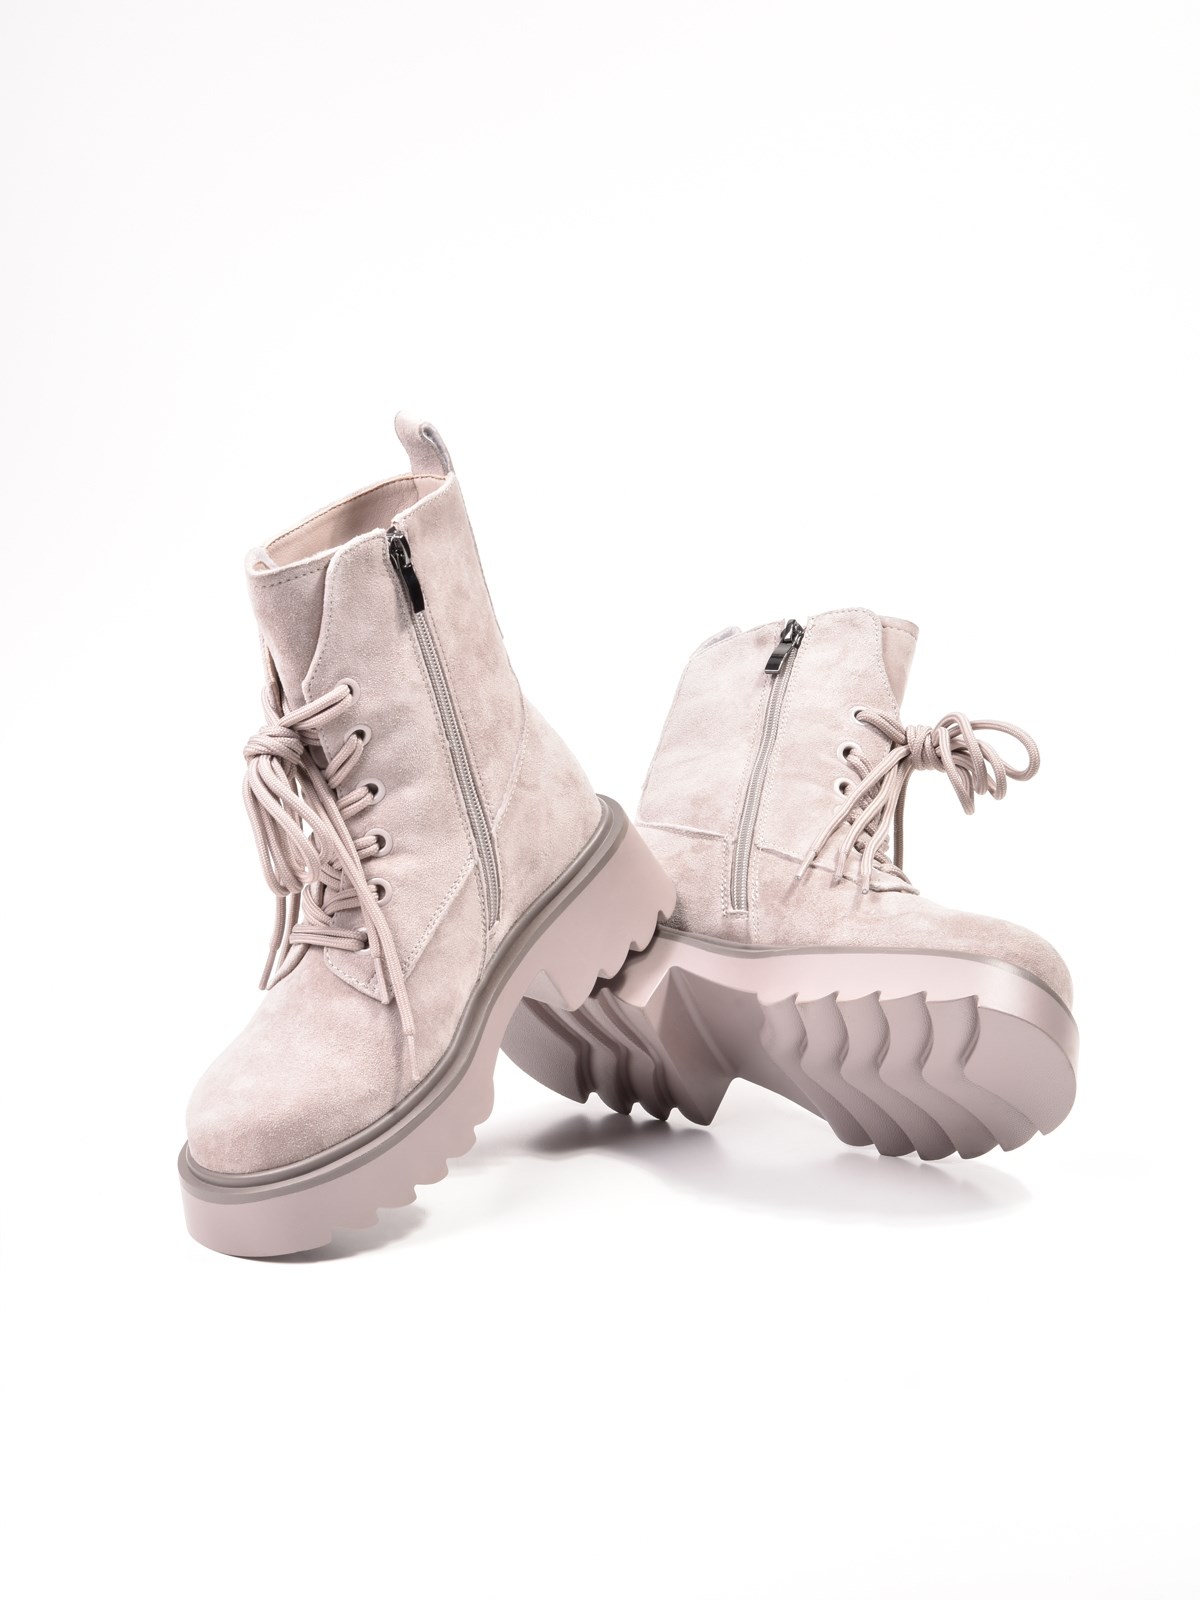 Женские зимние ботинки бежевого цвета из натуральной замши купить в Казани  от производителя |Сhewhite